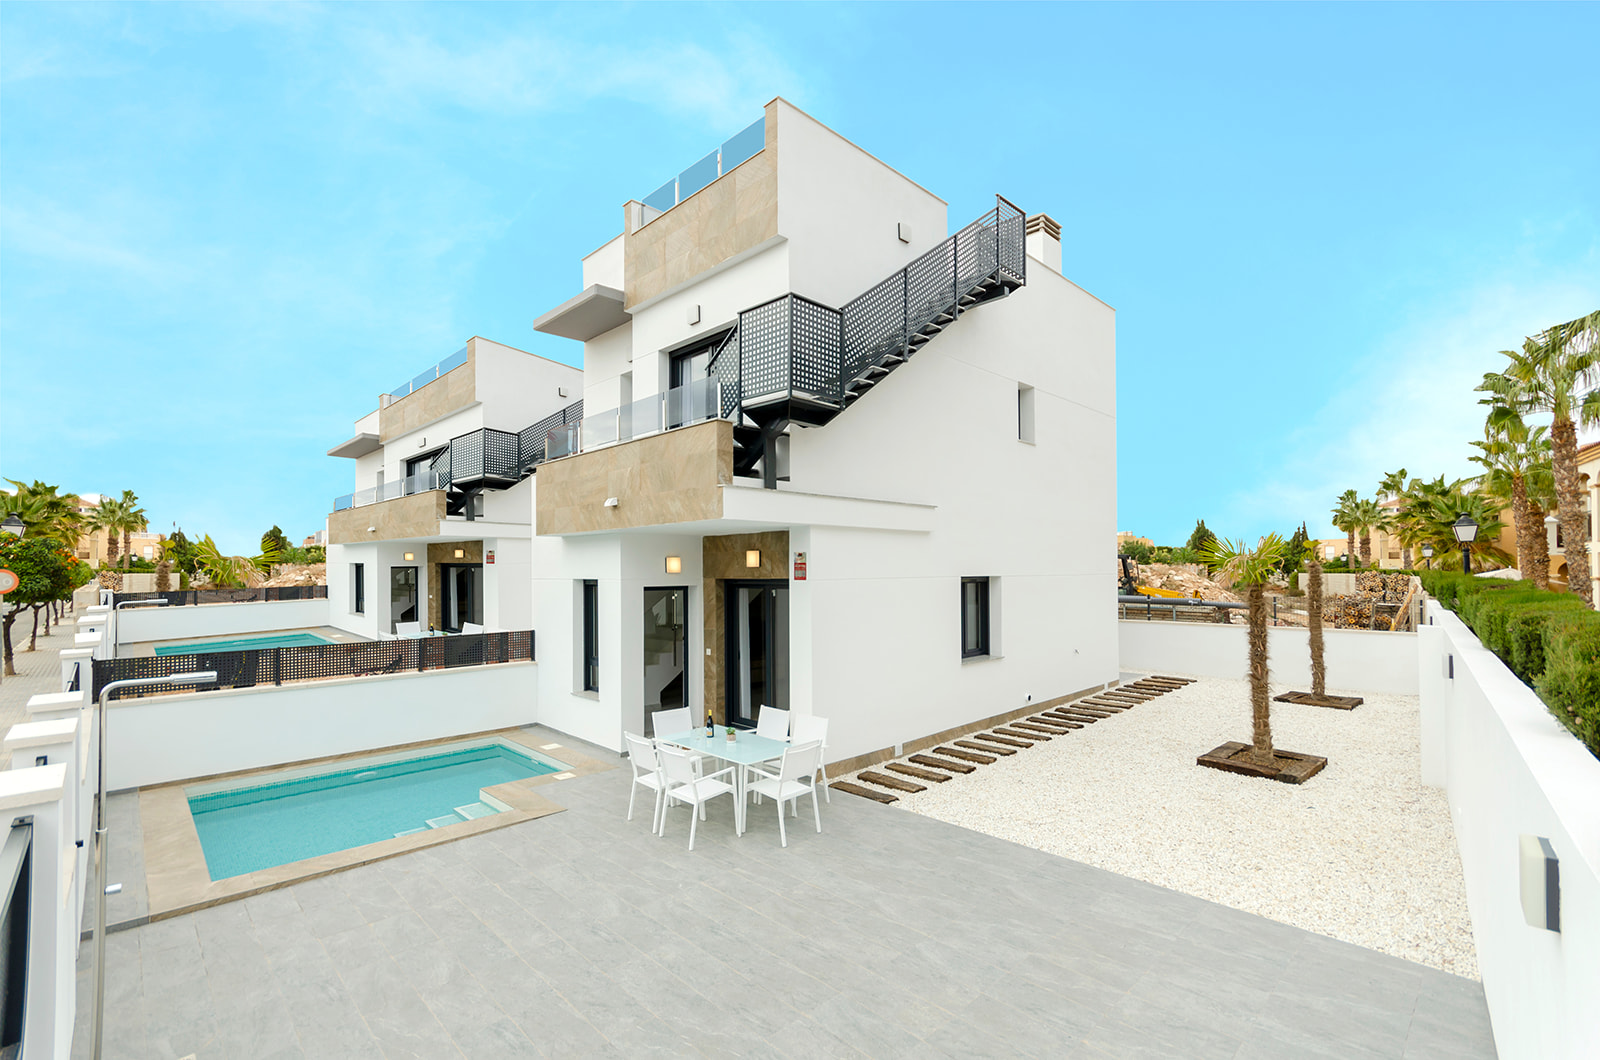 Nieuwbouw villa’s te koop in een residentiële zone bij de zoutmeren in Torrevieja.